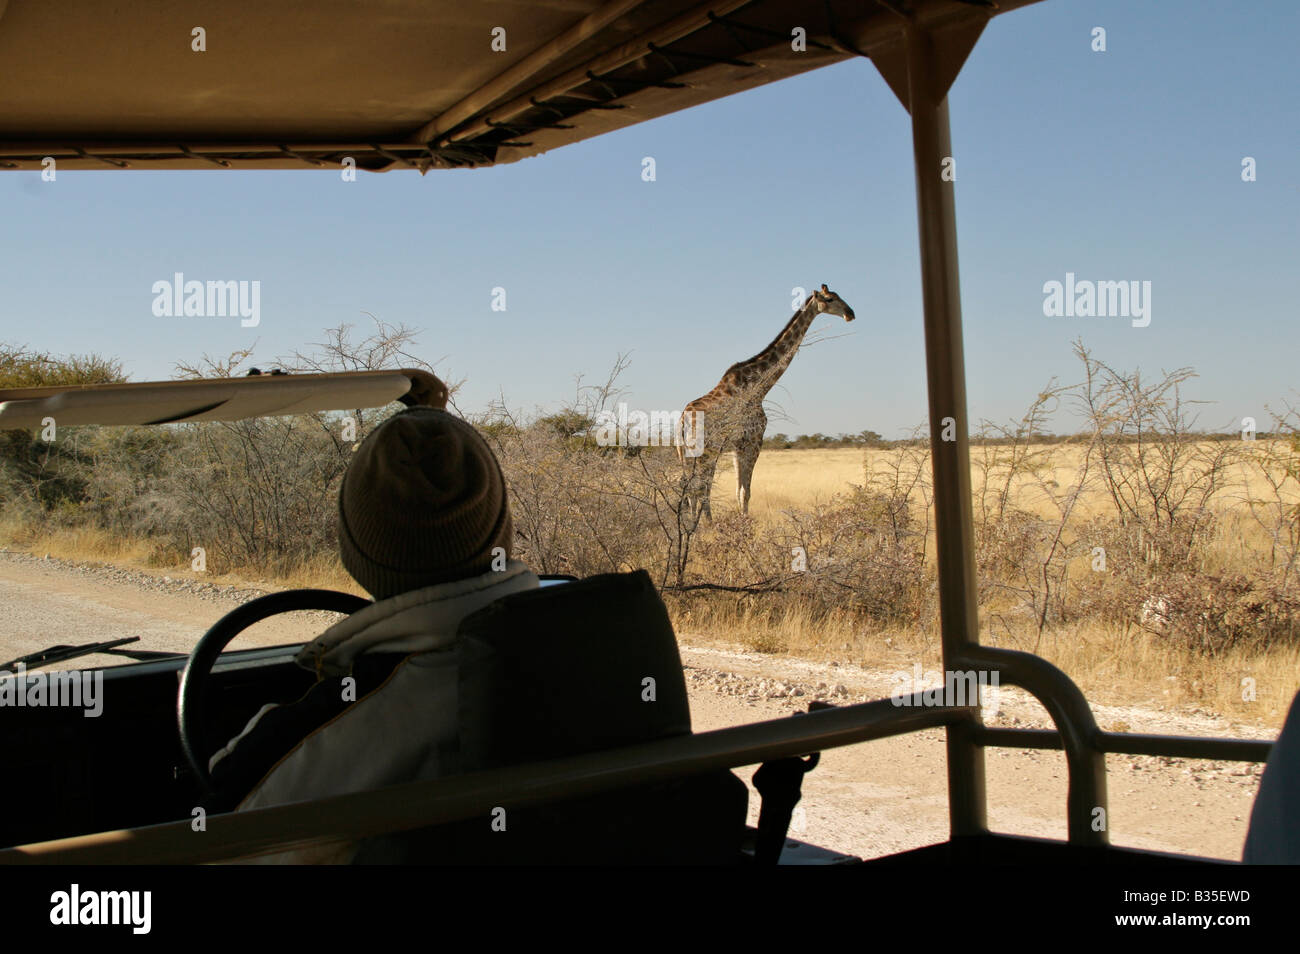 Regarder [girafe Giraffa camelopardalis] de camion safari dans le parc d'Etosha Wildlife park en Namibie Afrique du Sud Banque D'Images